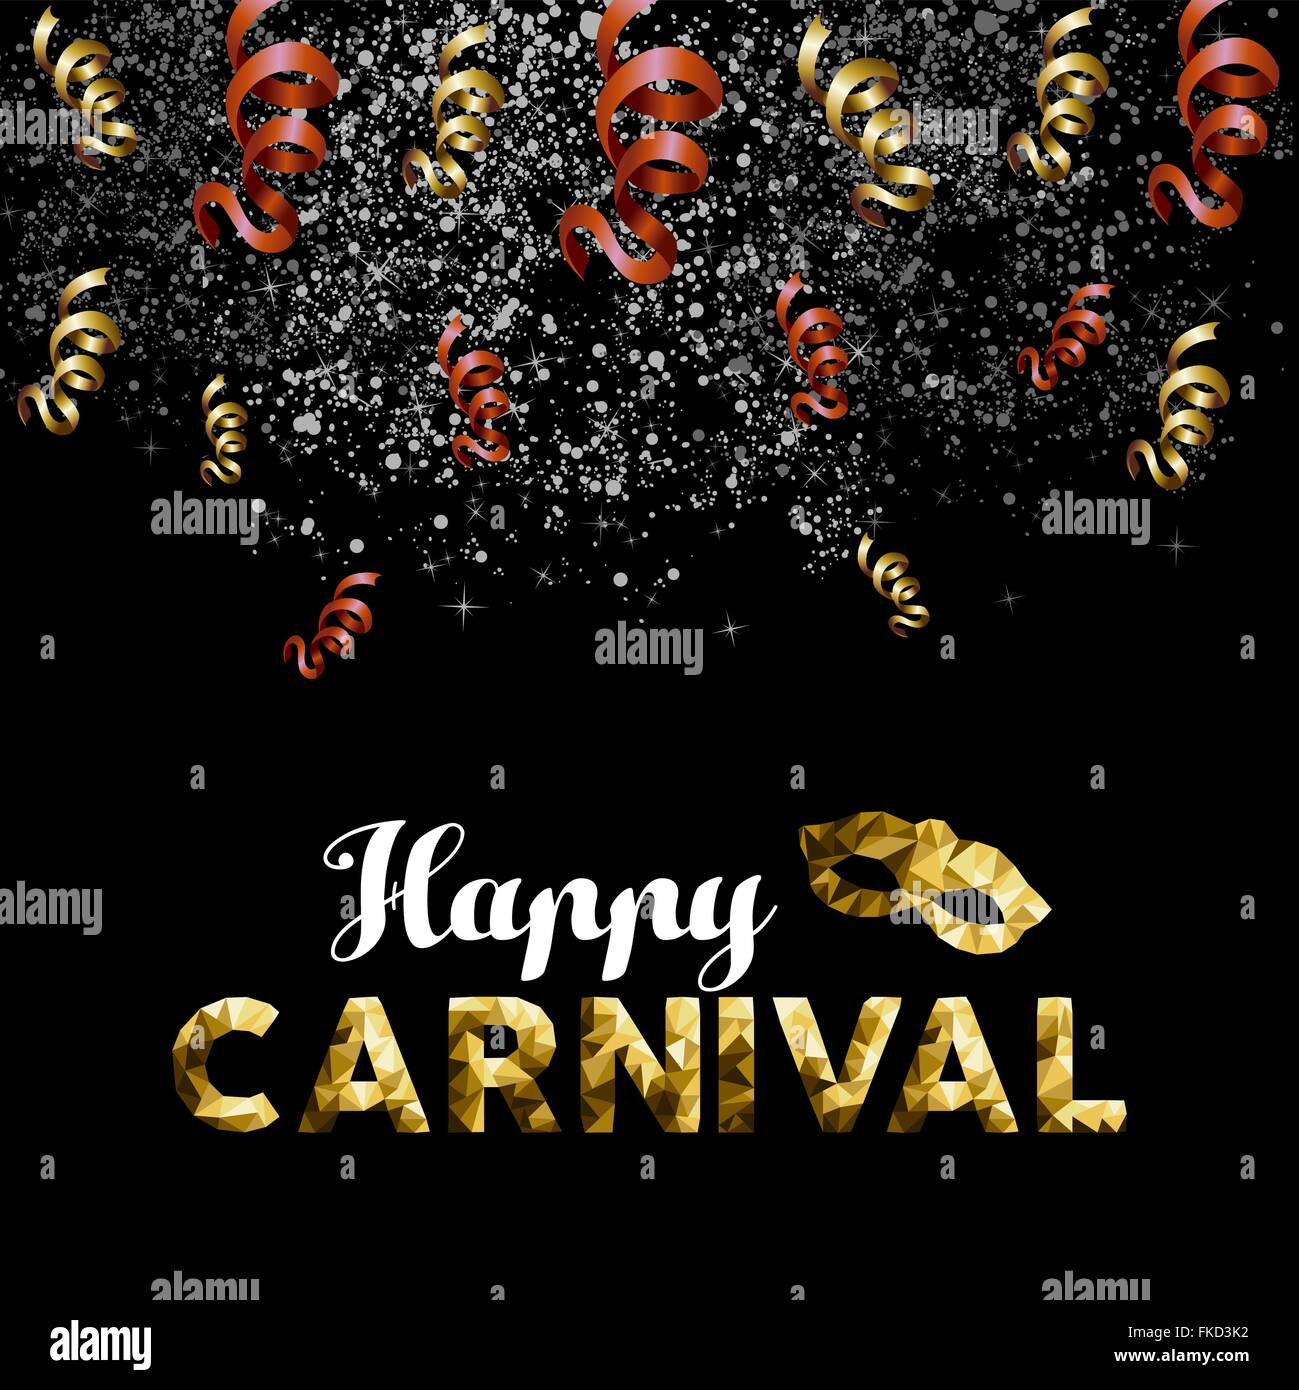 Carnaval d'or low poly avec masque de texte sur confetti et party streamer arrière-plan. Vecteur EPS10. Illustration de Vecteur